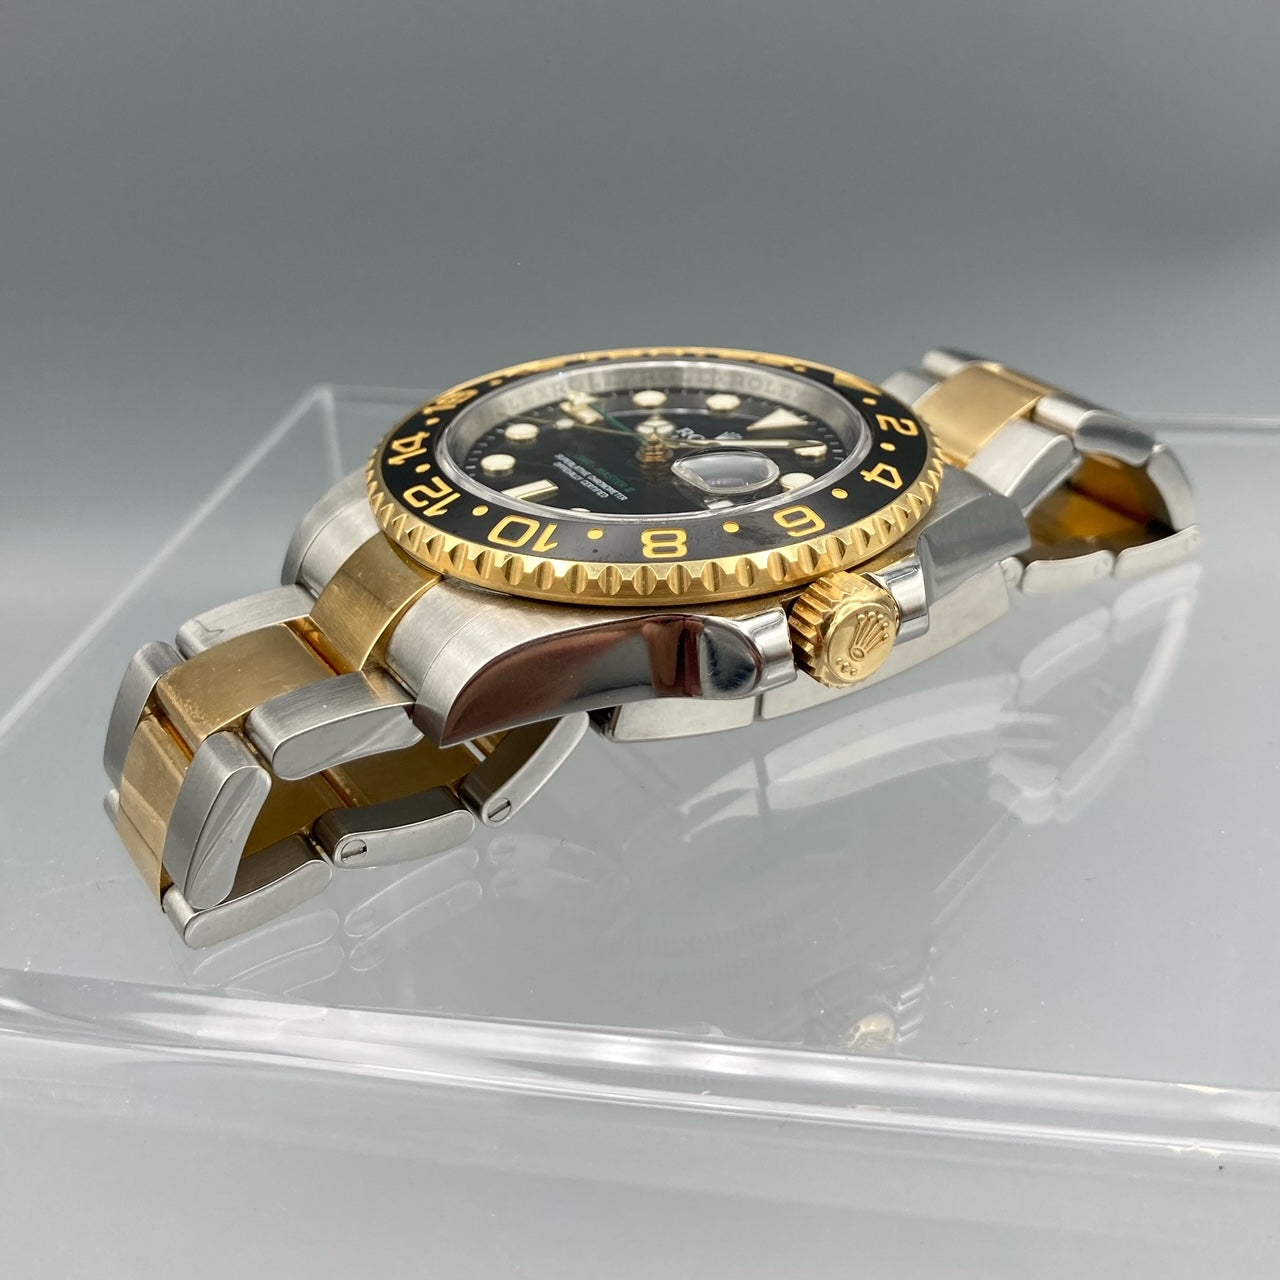 Montre Rolex GMT-Master II pour homme noire - 116713